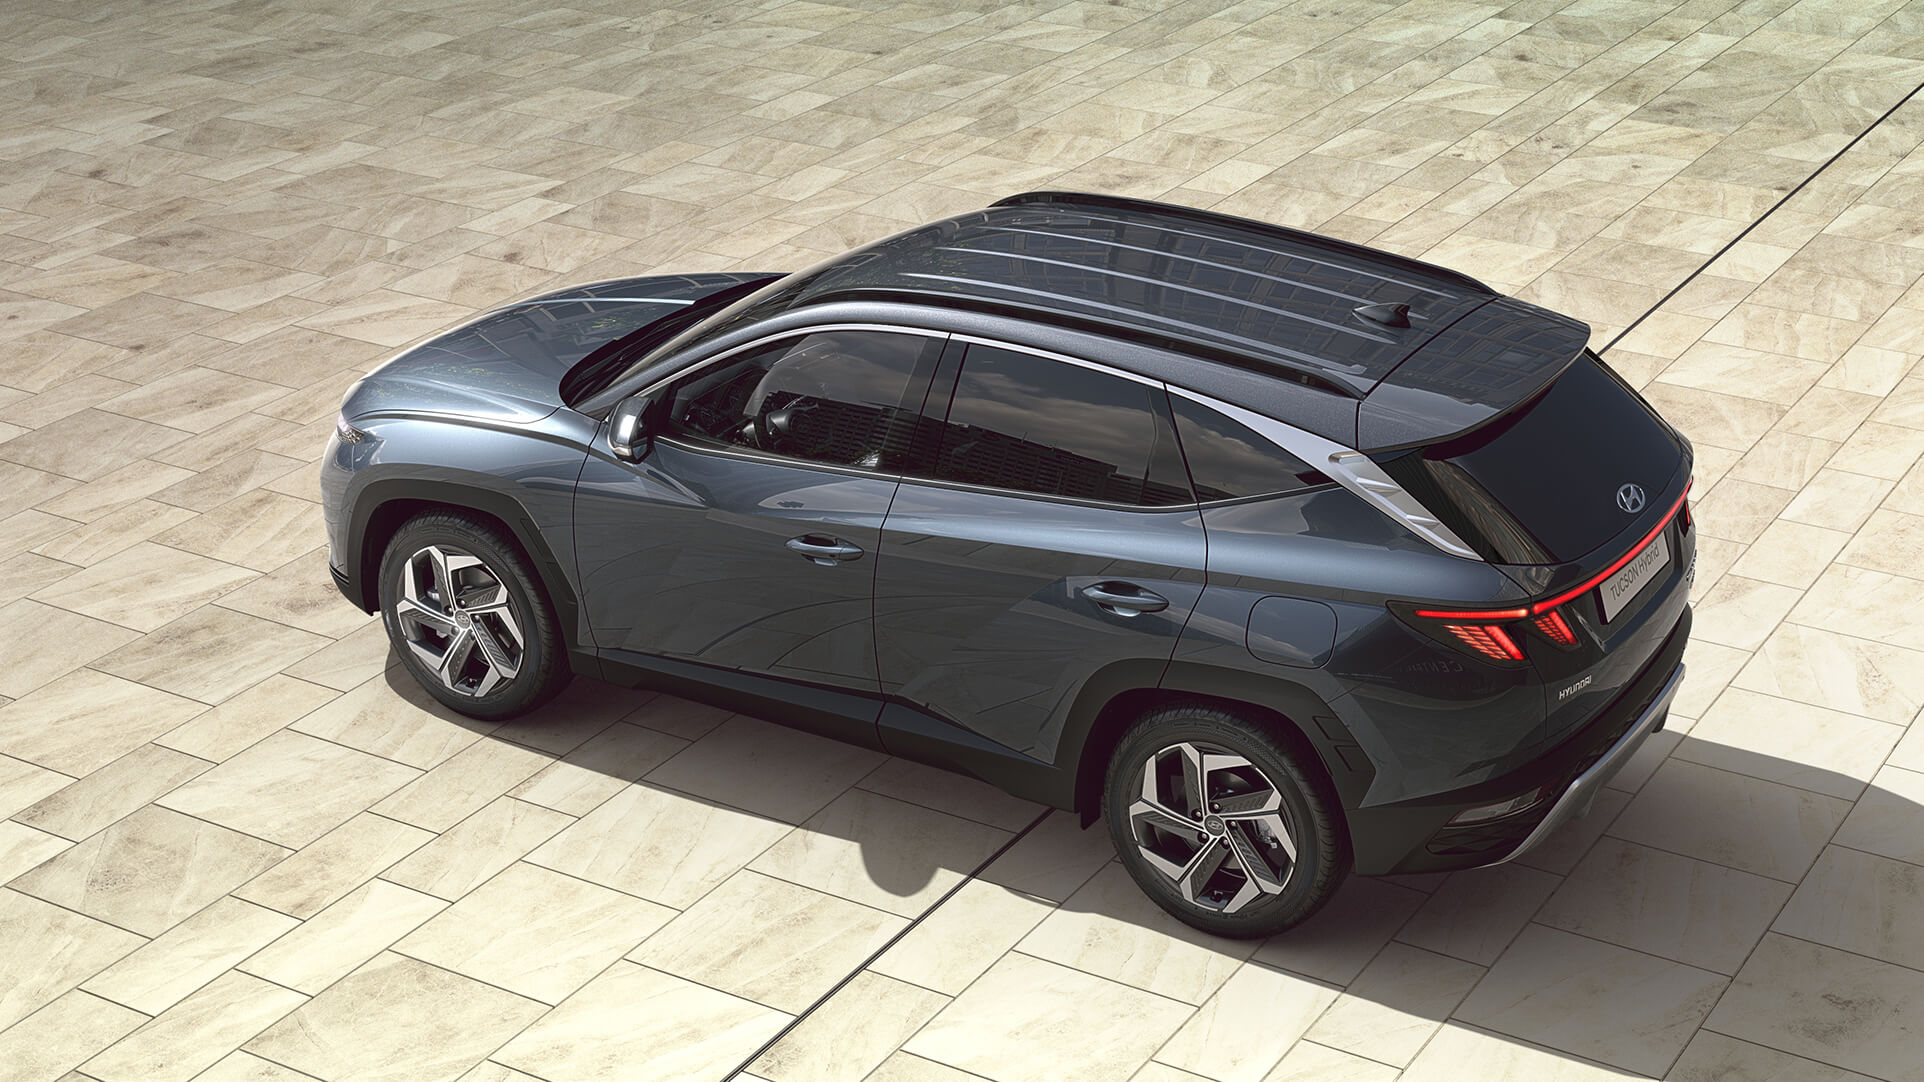 Zcela nové kompaktní SUV Hyundai Tucson v pohledu shora.